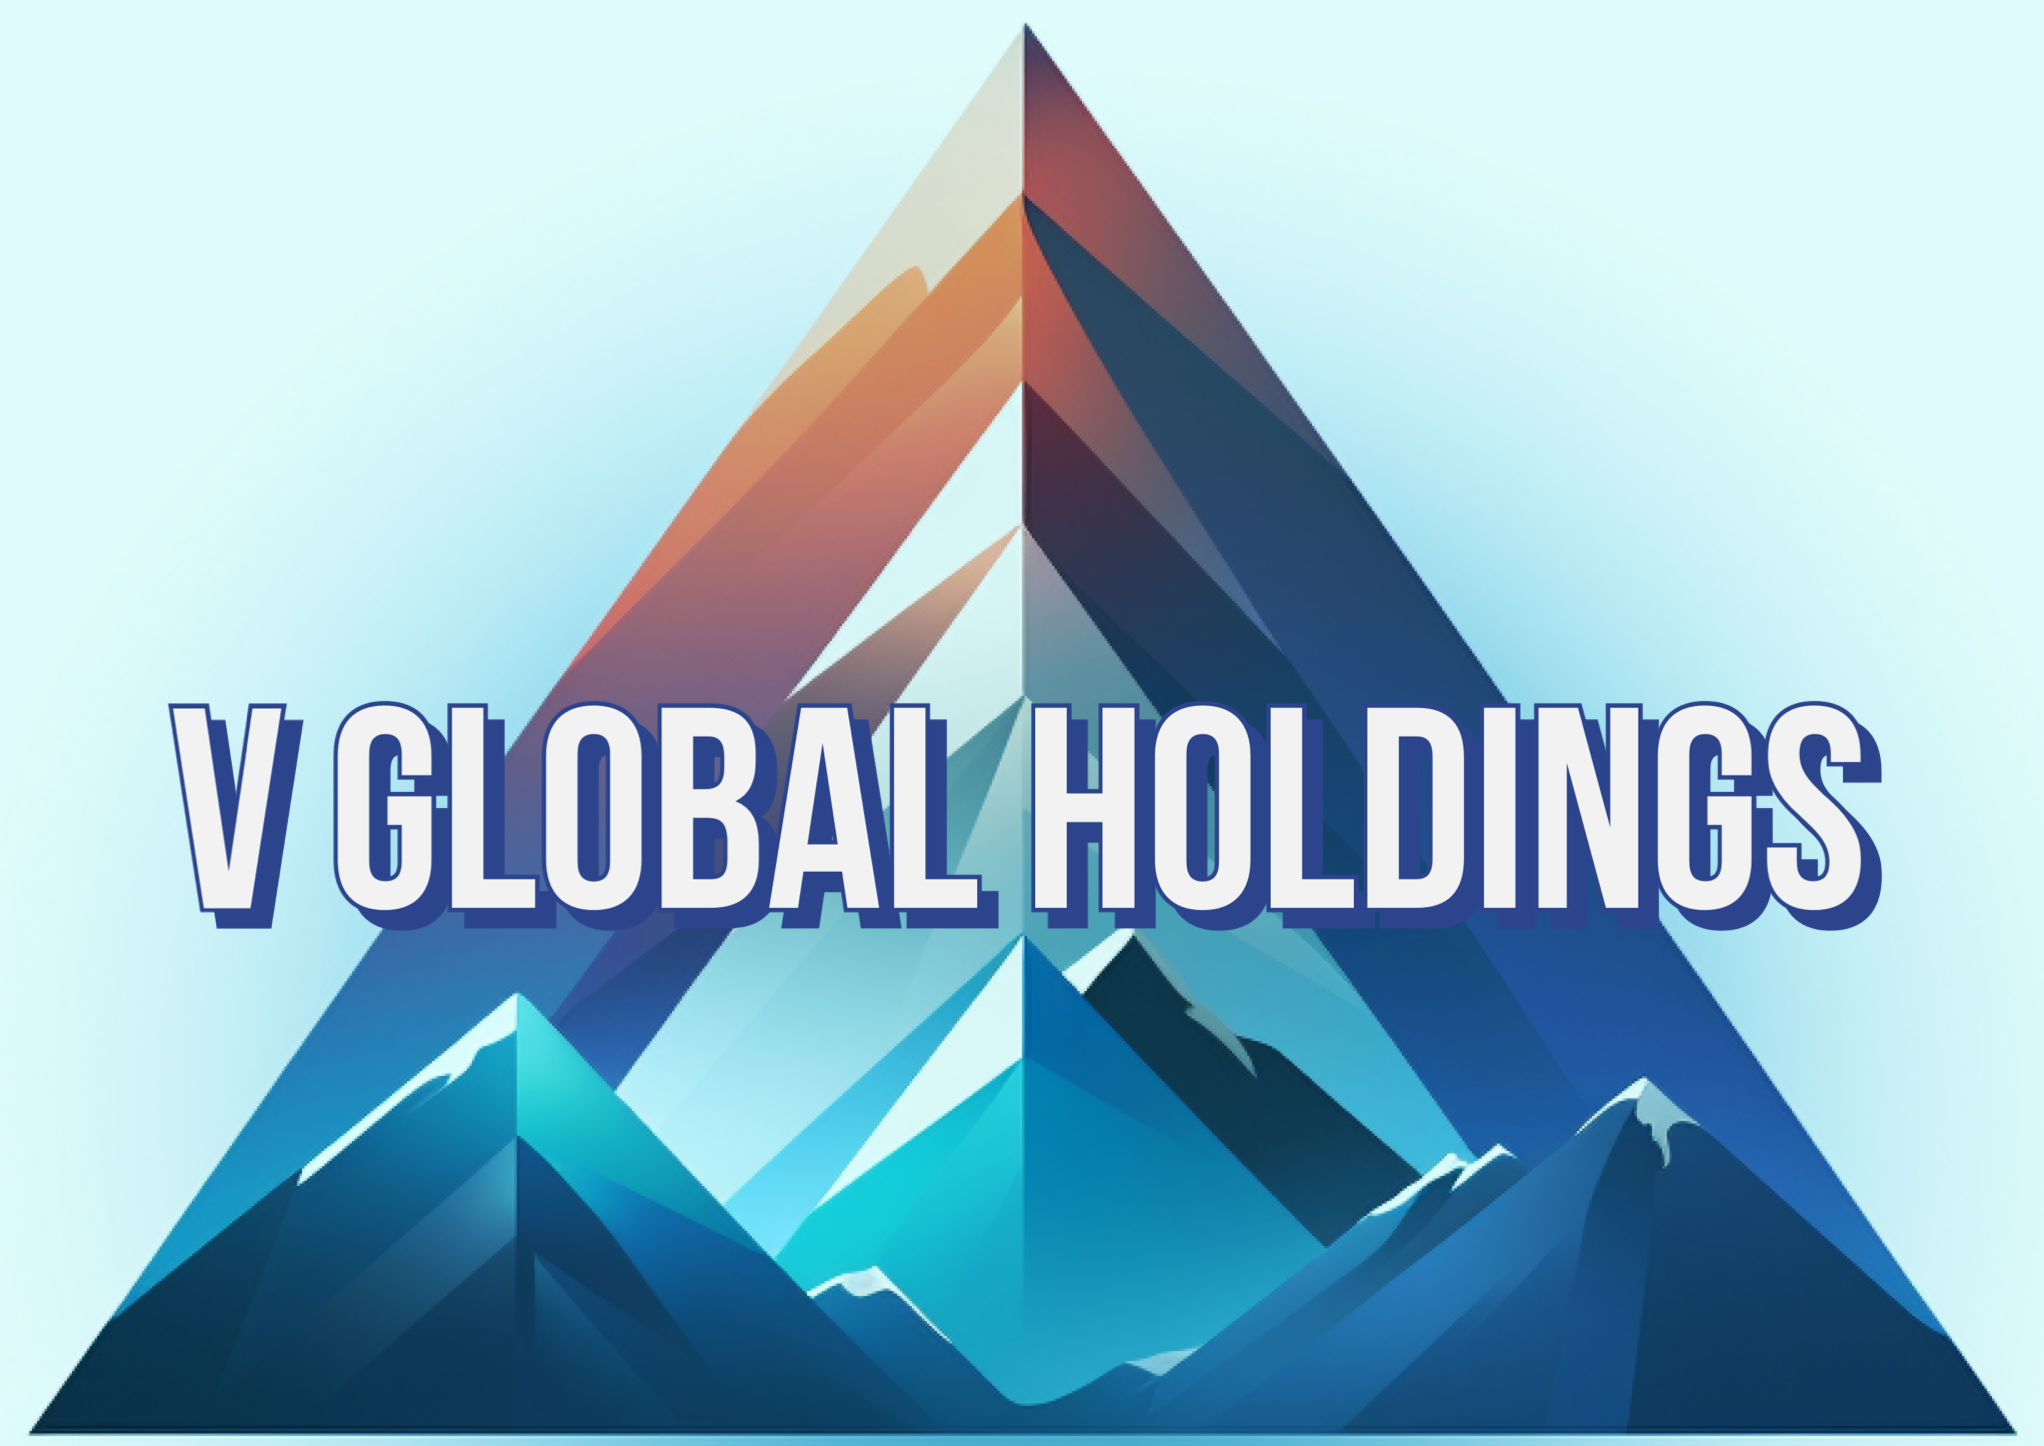 Victor Jung, V Global Holdings